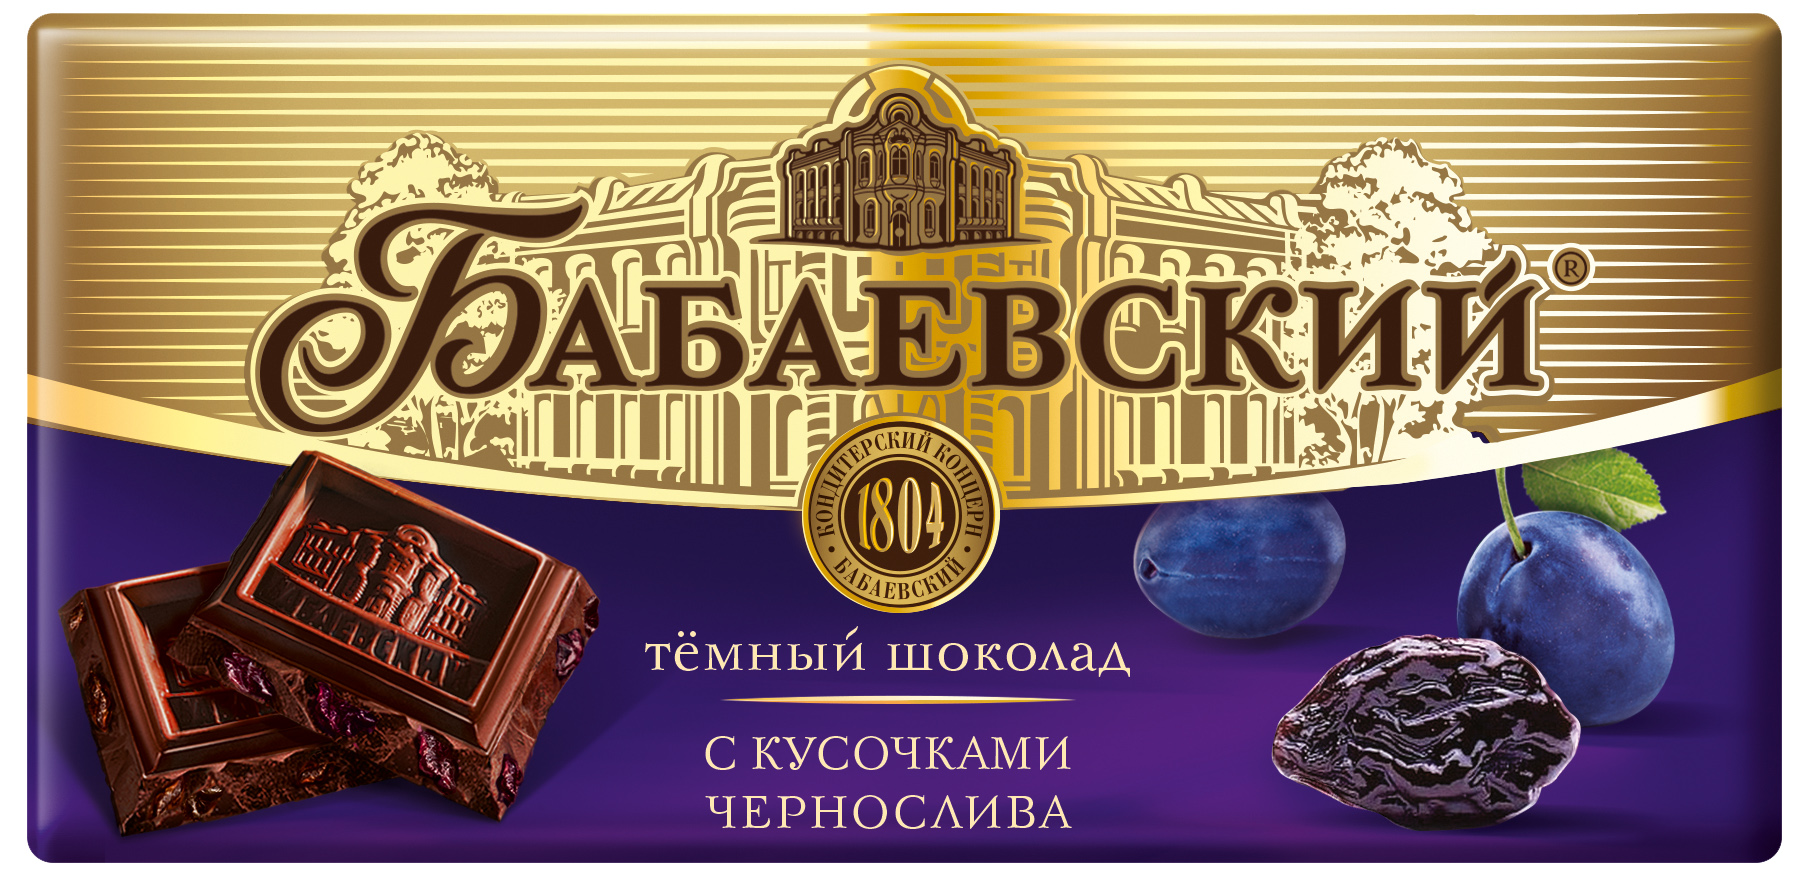 Бабаевский шоколад груша бренди